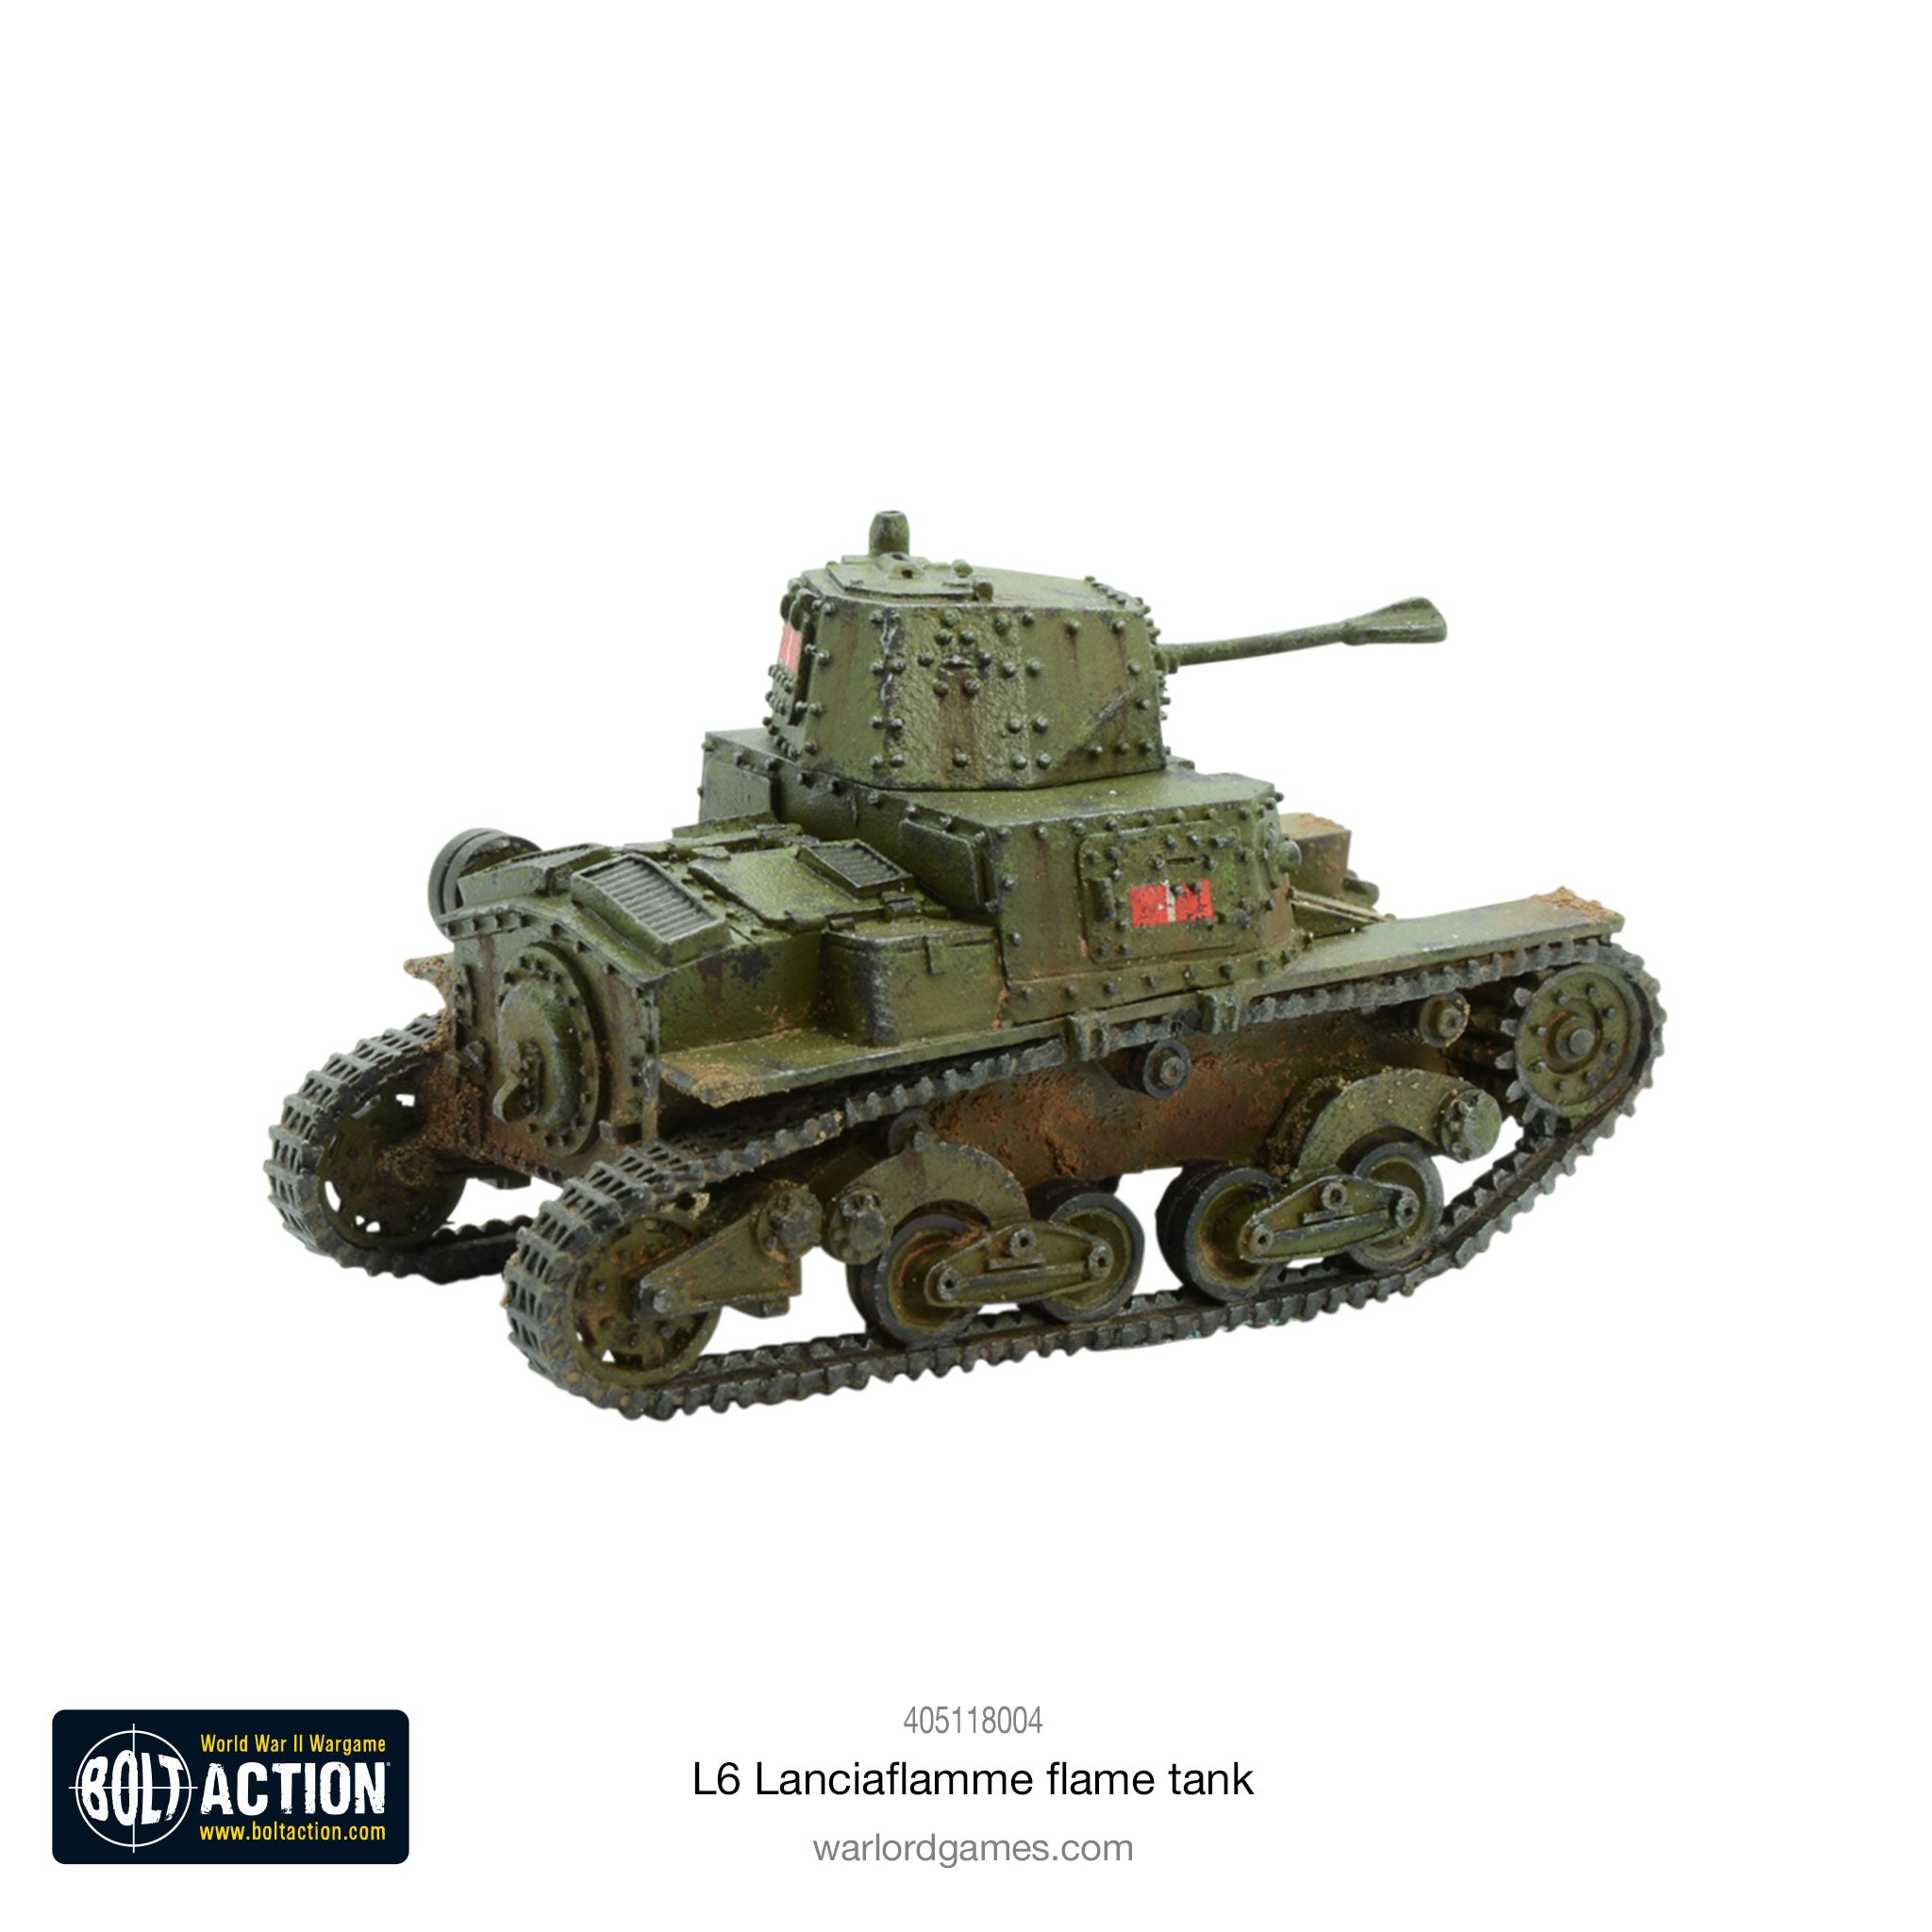 L6 Lanciaflamme flame tank